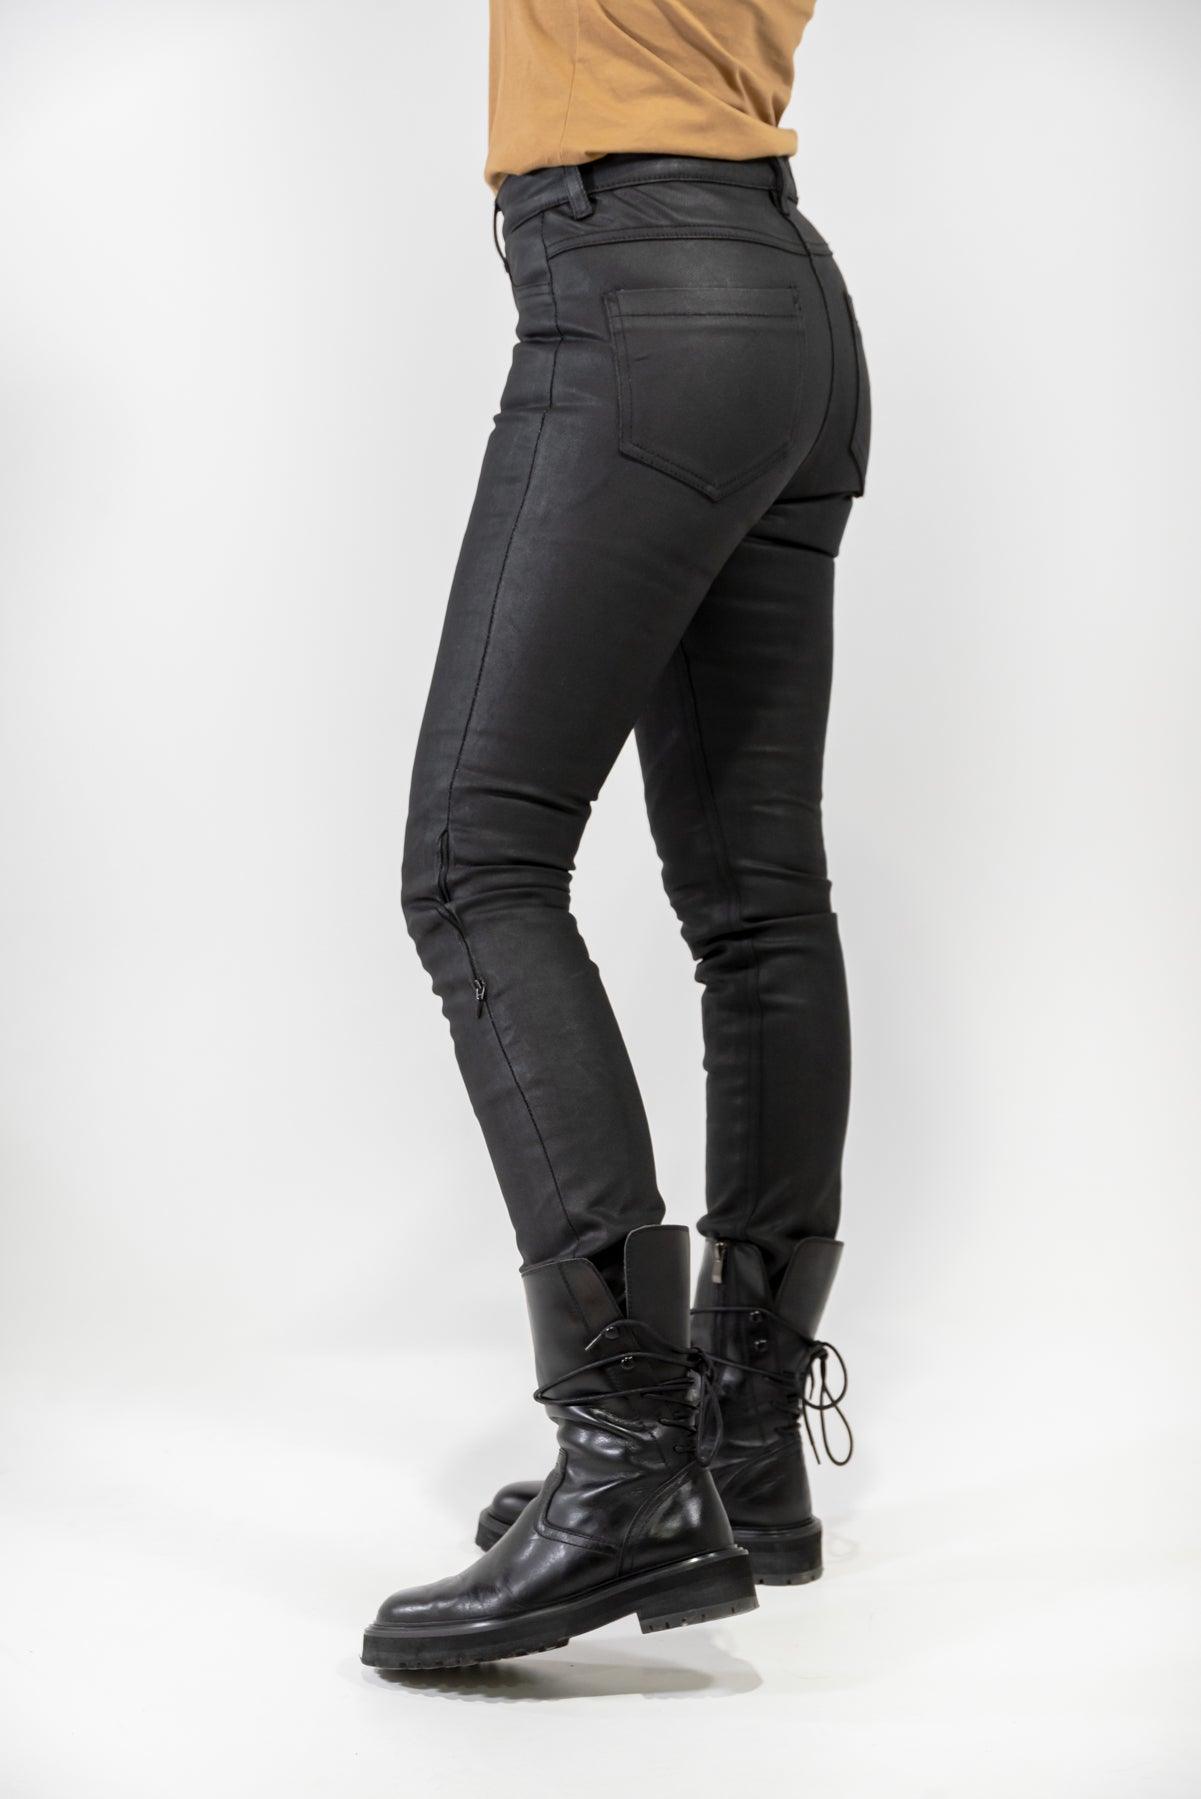 4SR women's motorcycle jeans GTS Lady